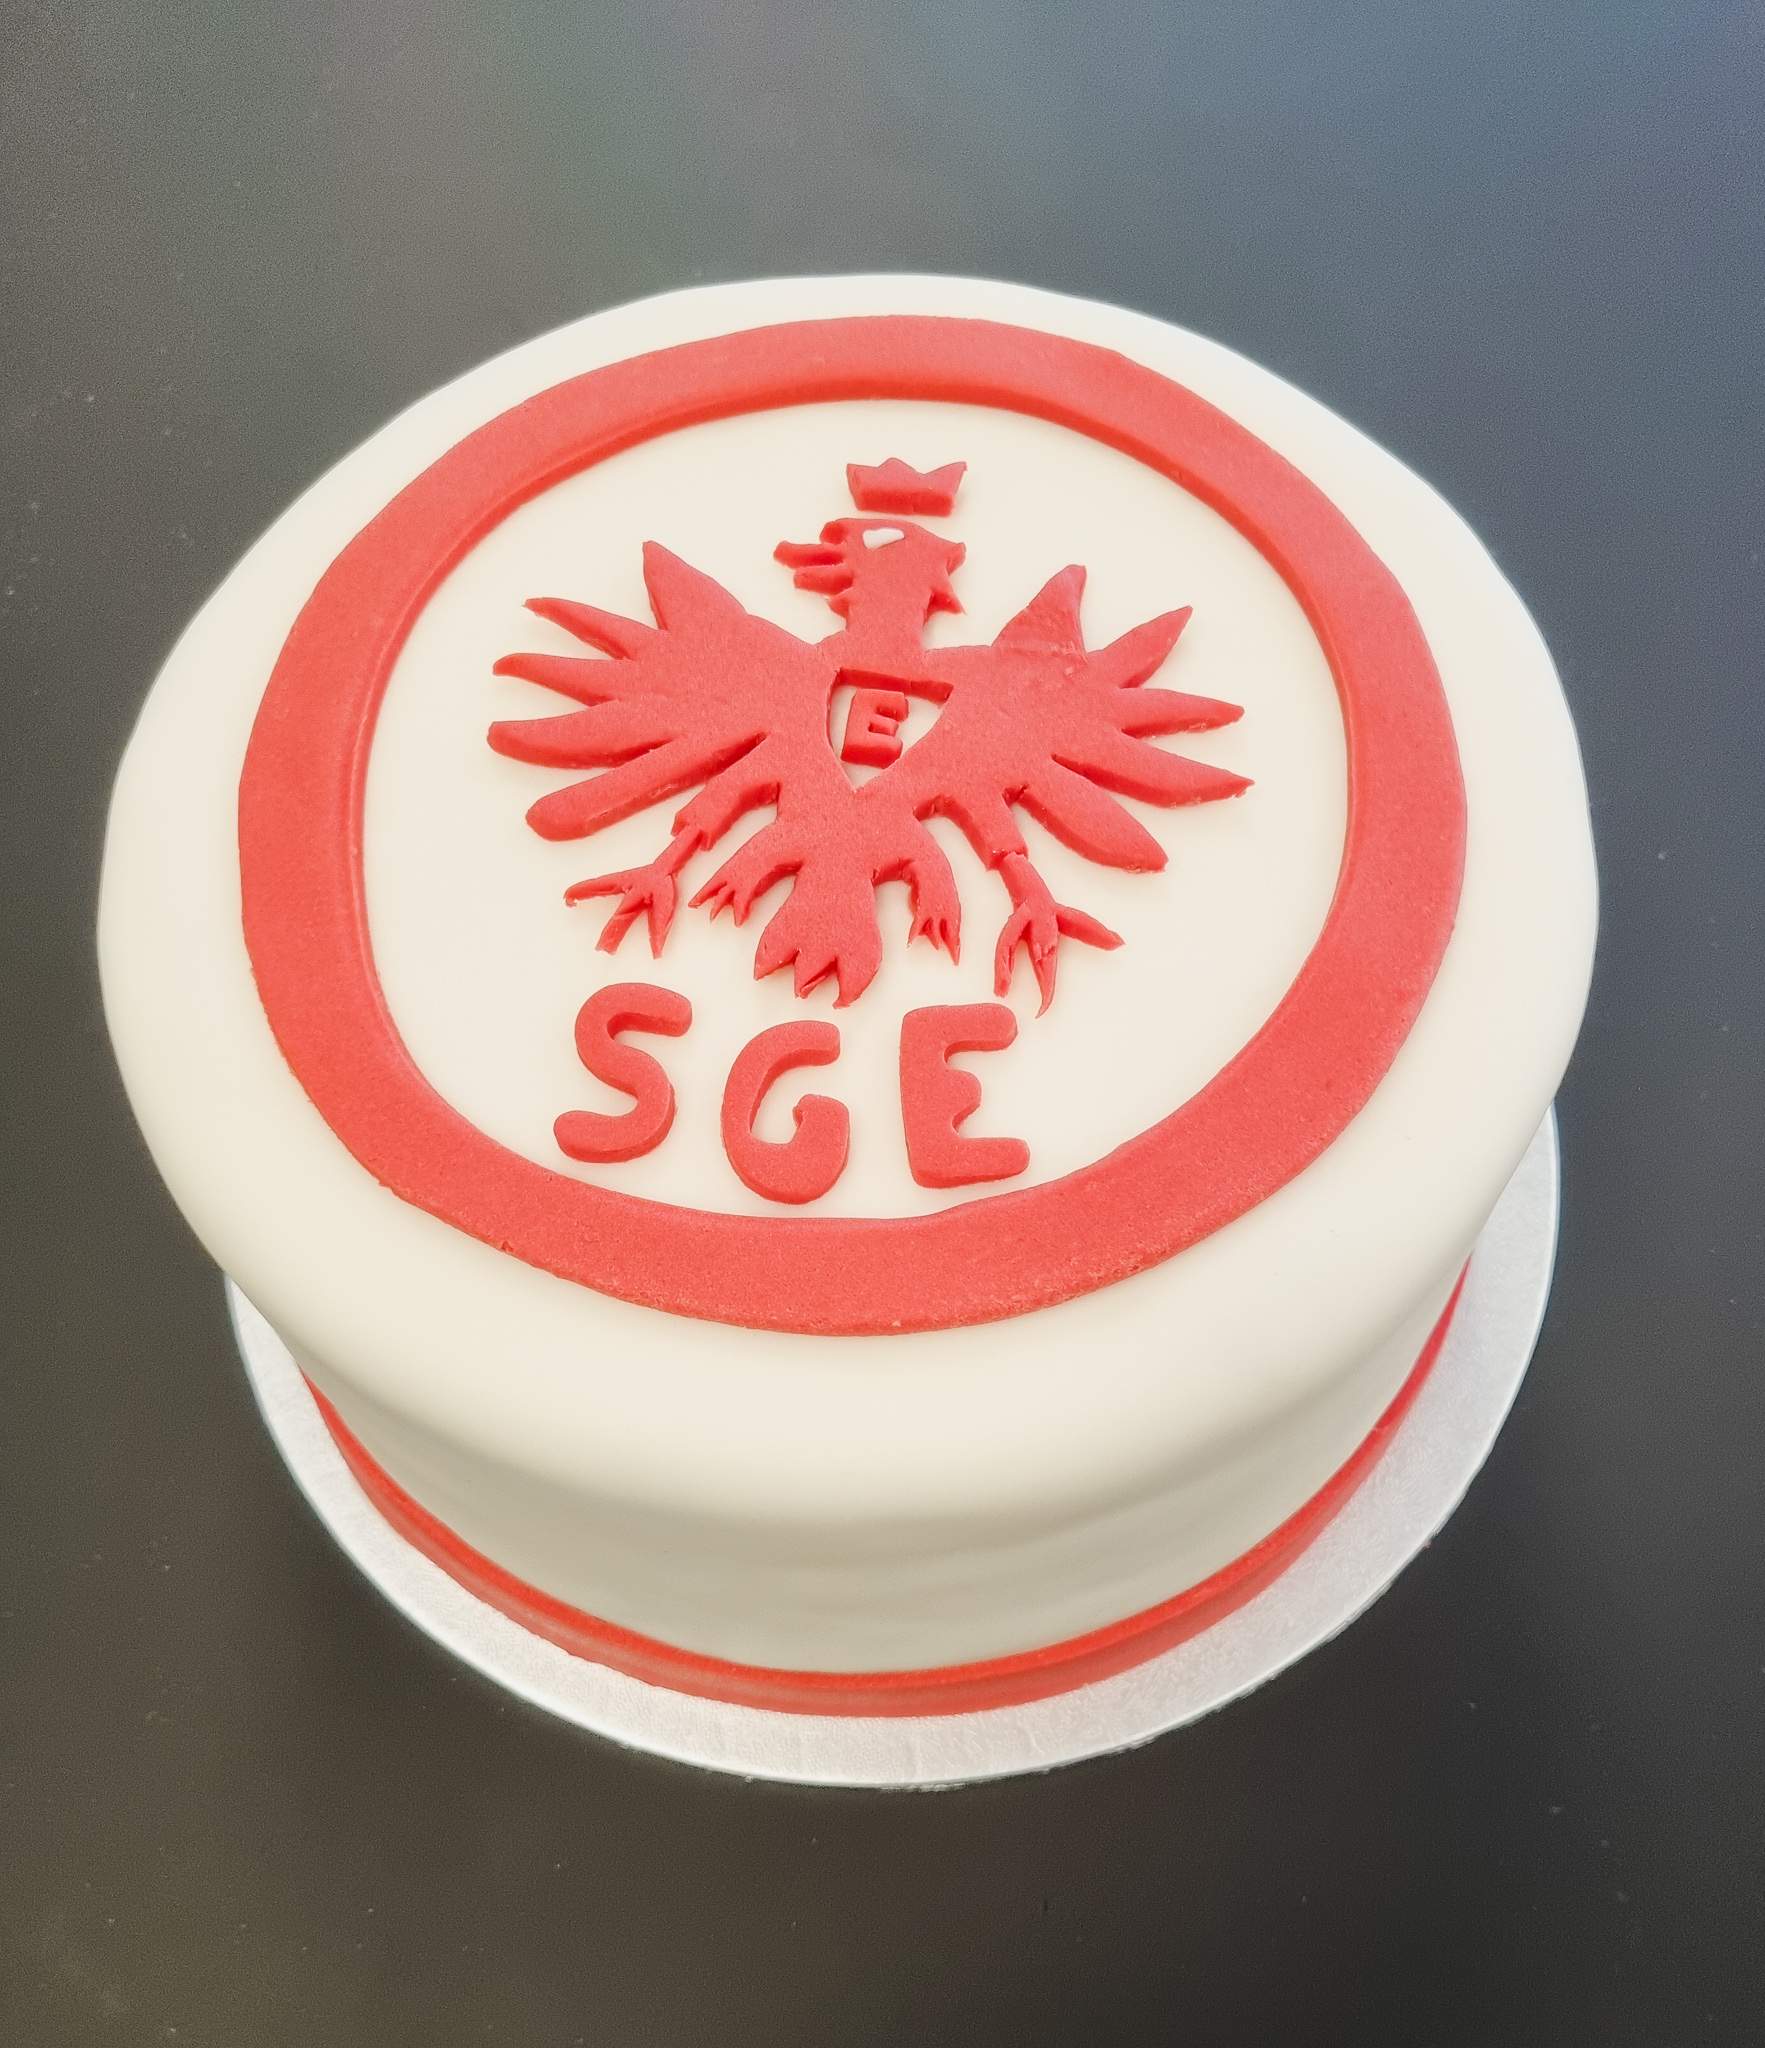 Eine vegane Torte mit dem Vereinswappen von Eintracht Frankfurt